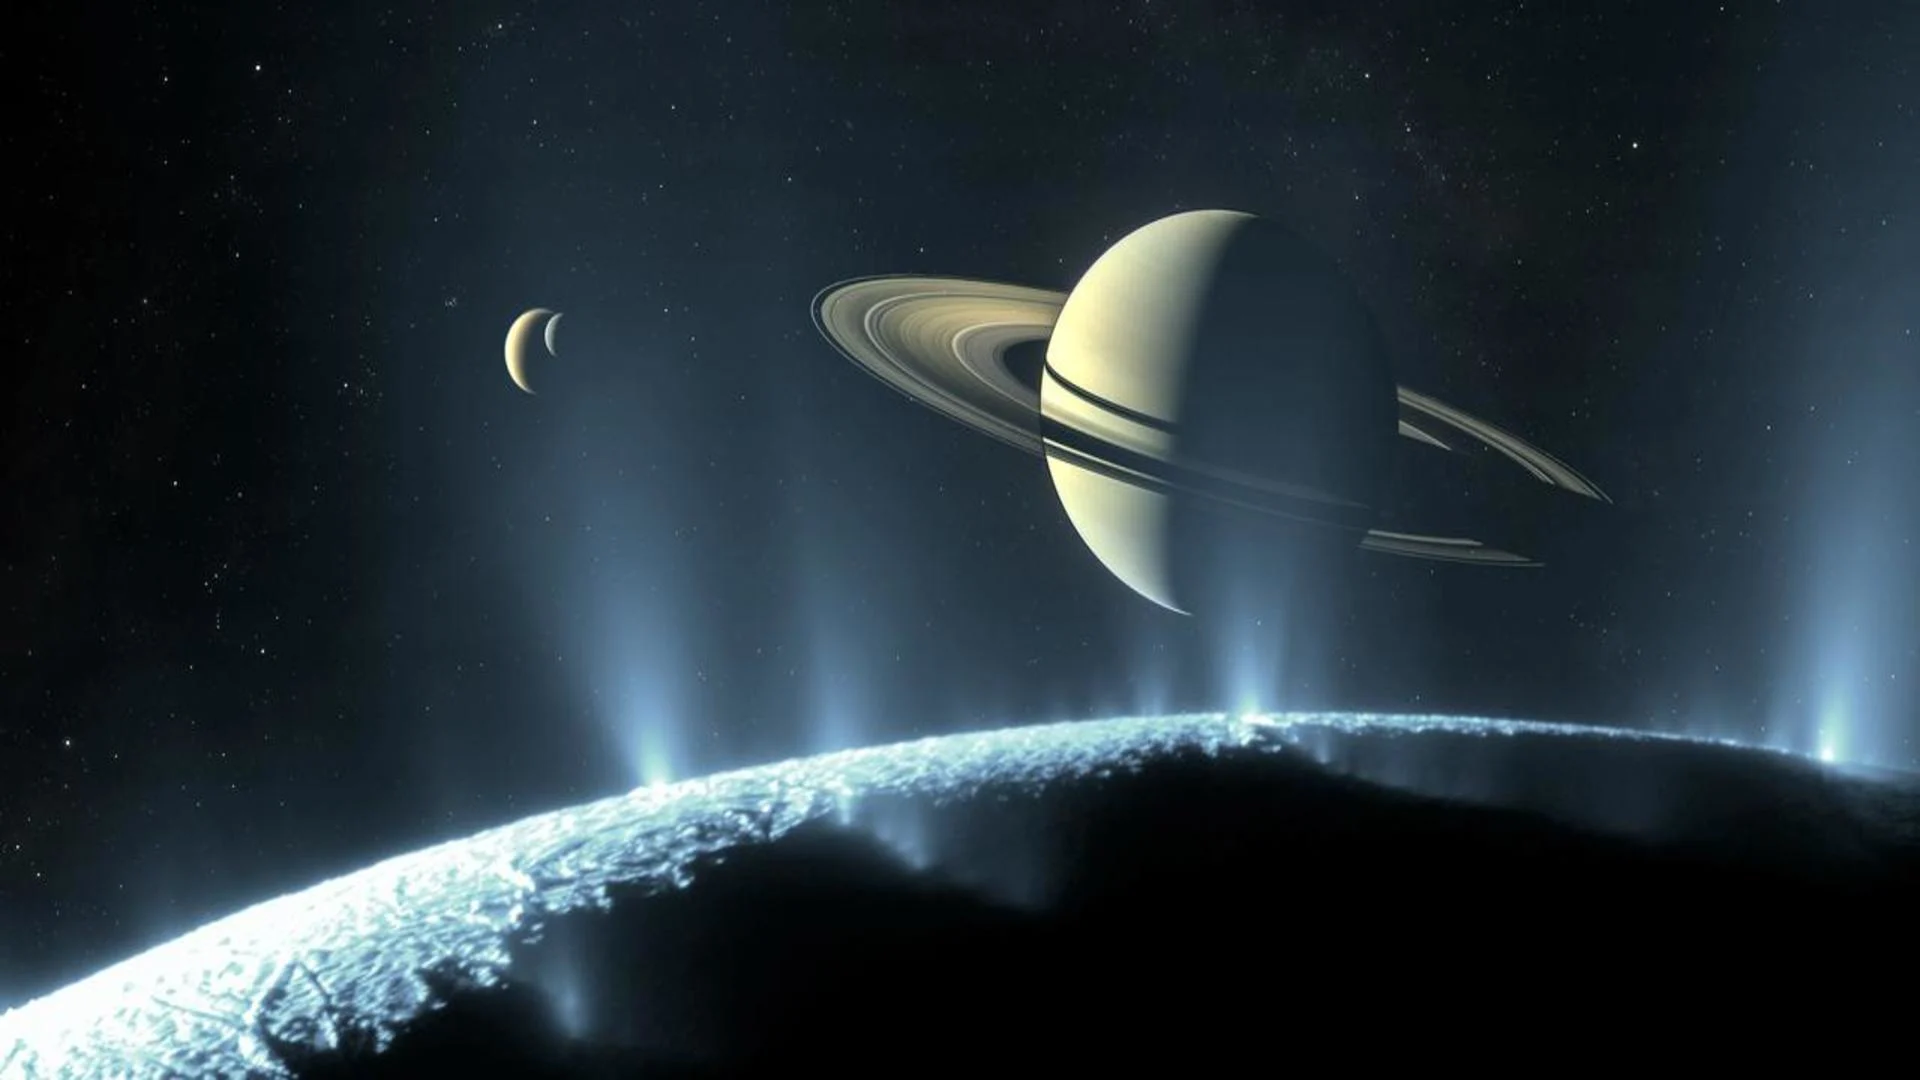 62 nouvelles lunes découvertes autour de Saturne